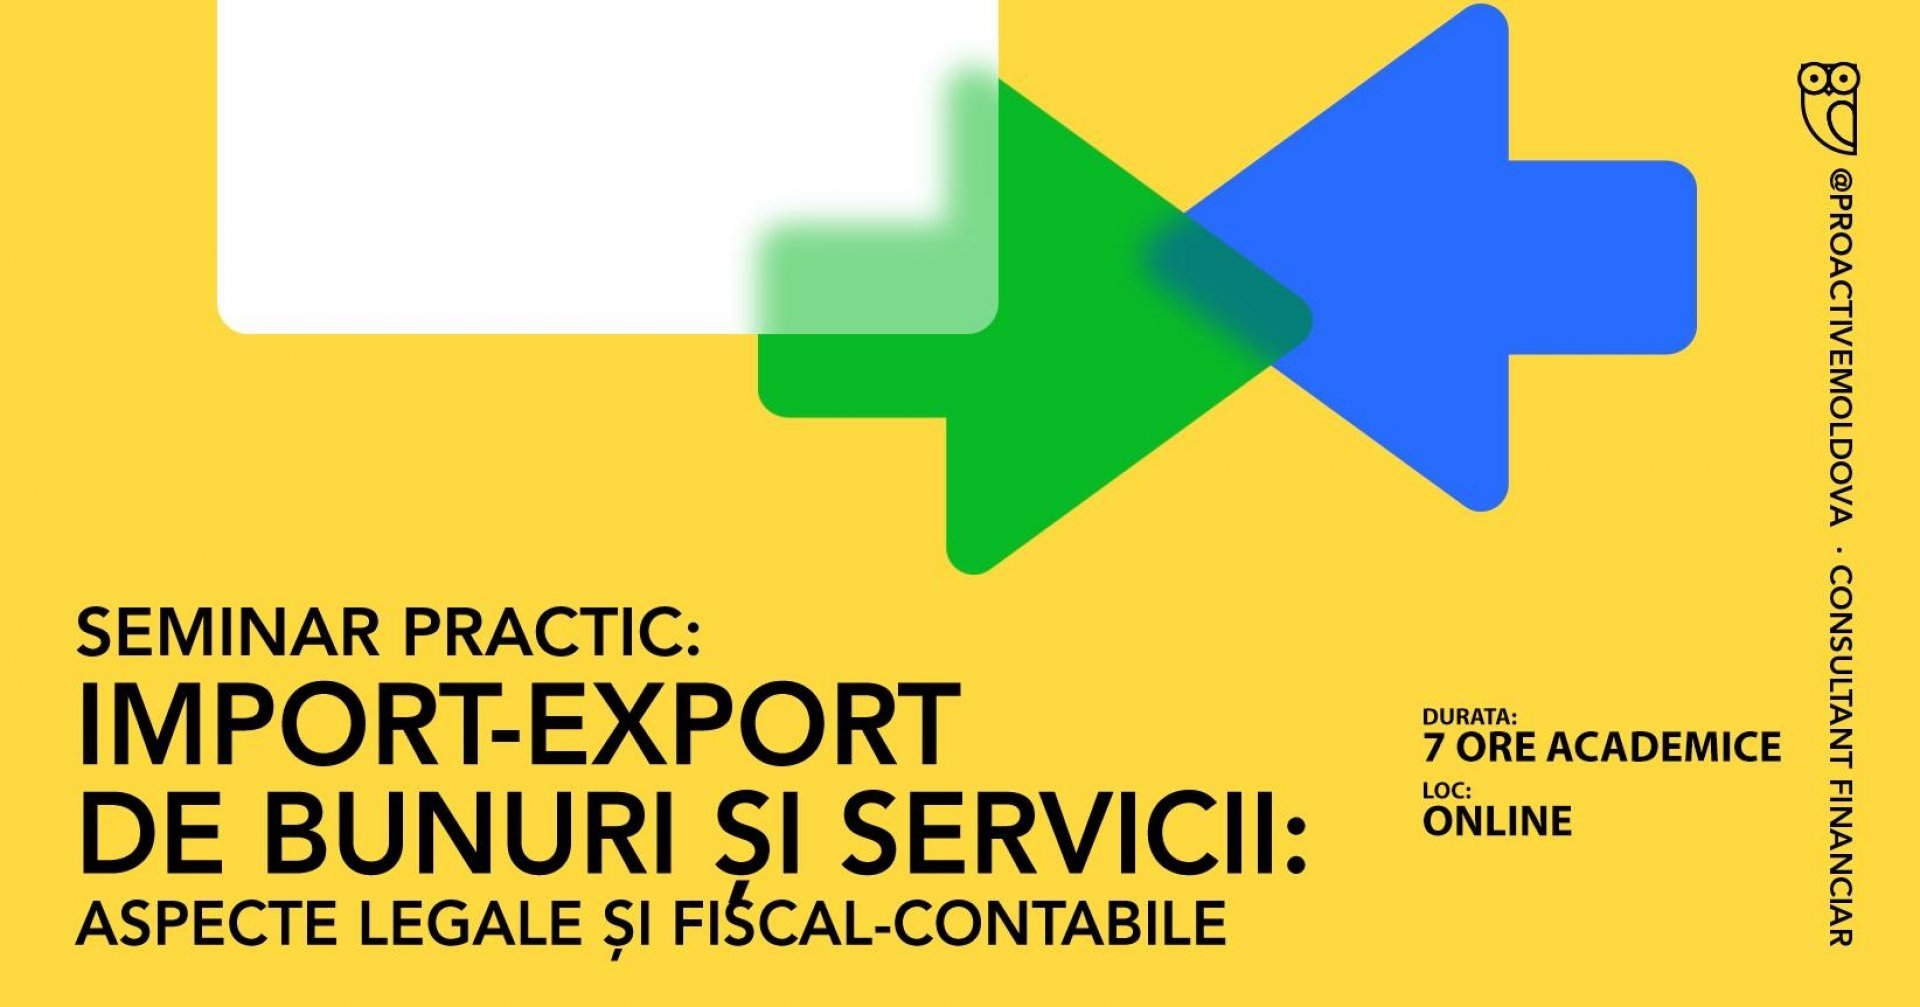 Seminar practic "Import-export de bunuri și servicii: aspecte legale și fiscal-contabile" n